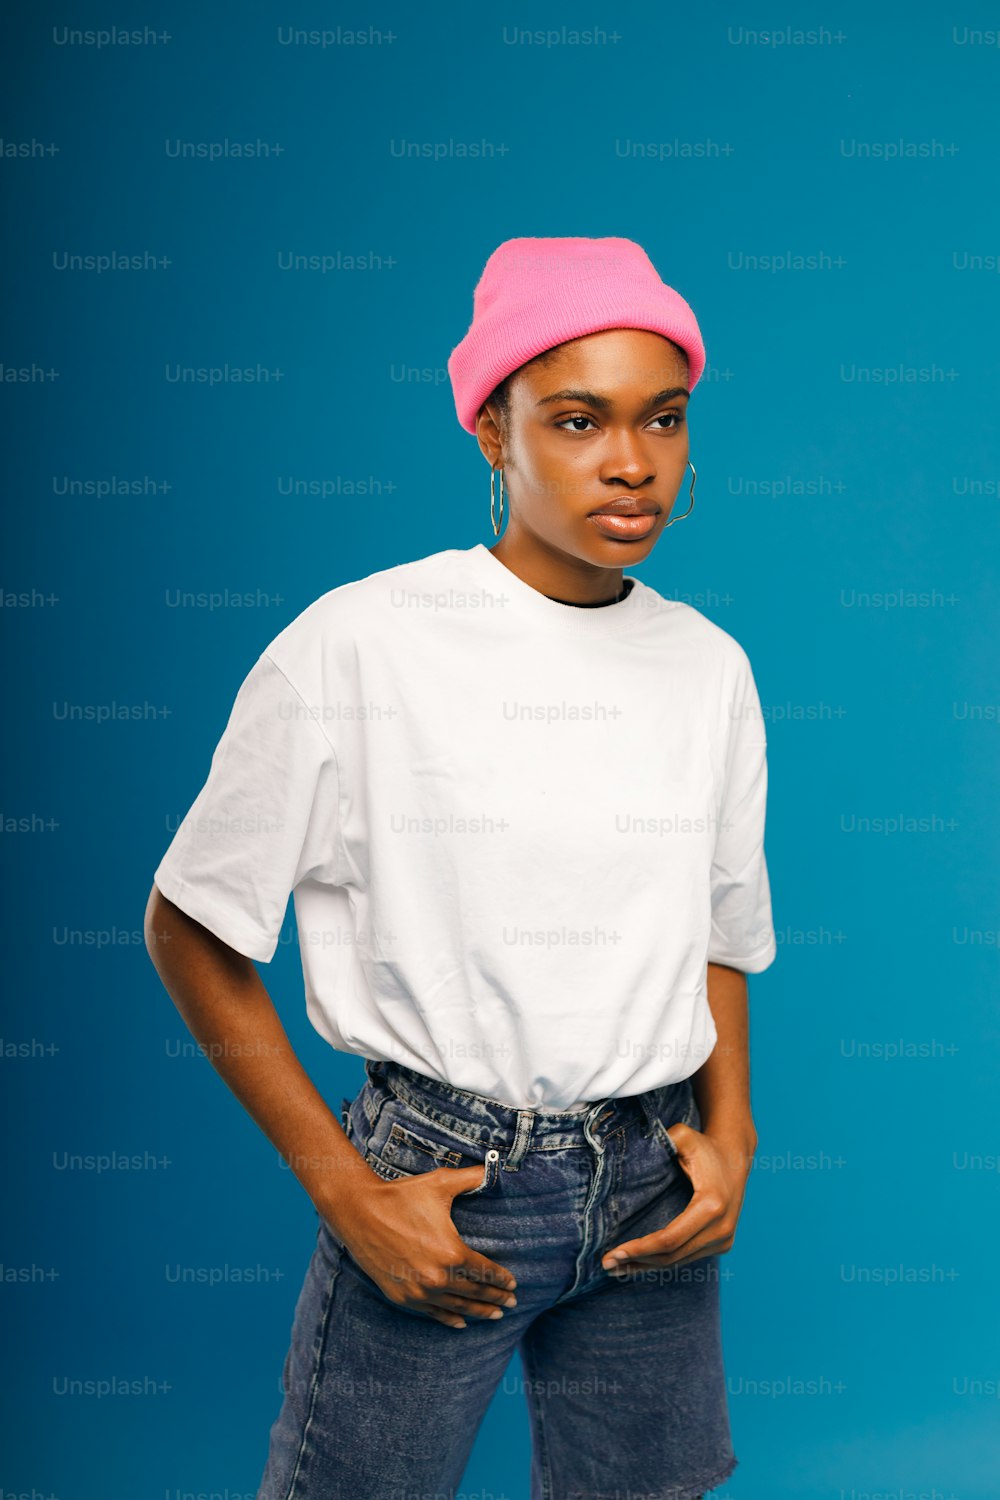 흰 셔츠와 분홍색 모자를 쓴 여자